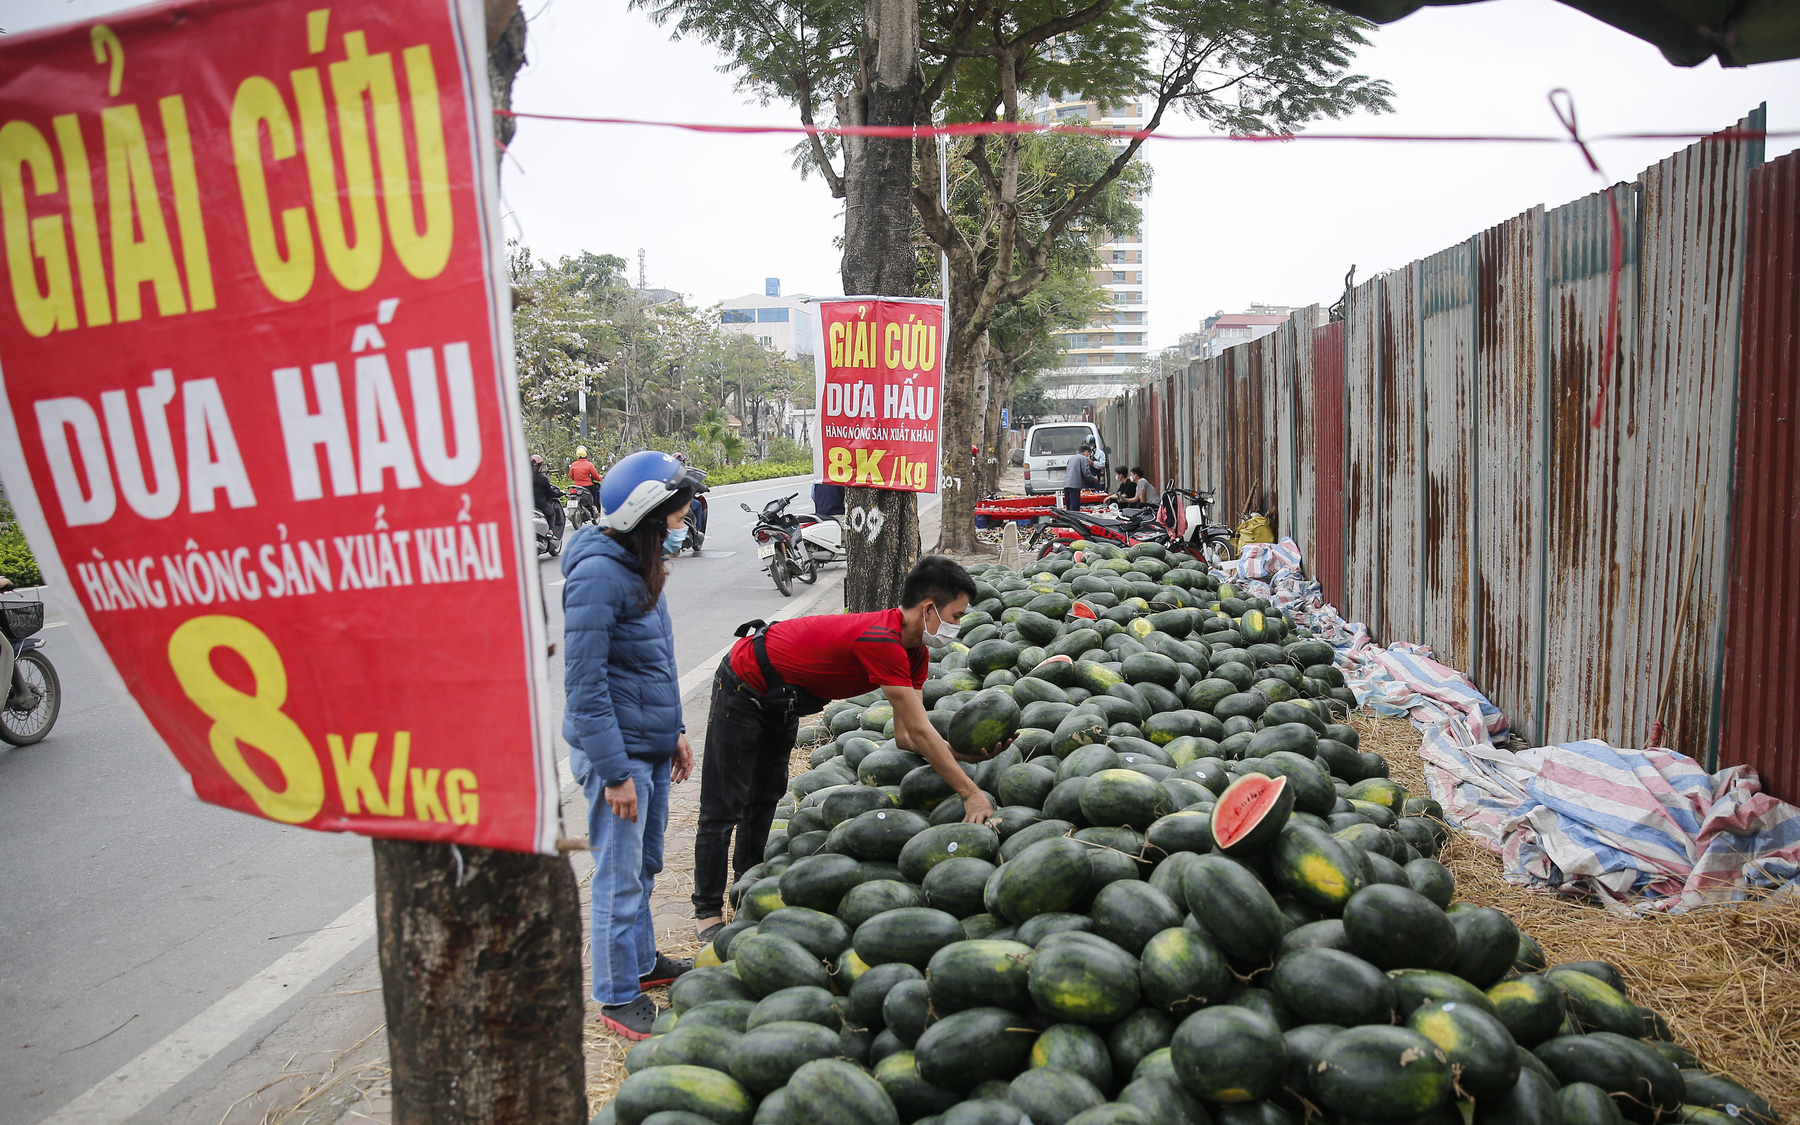 Dưa hấu "giải cứu" bày bán la liệt nhưng ít người mua trên vỉa hè ở Hà Nội